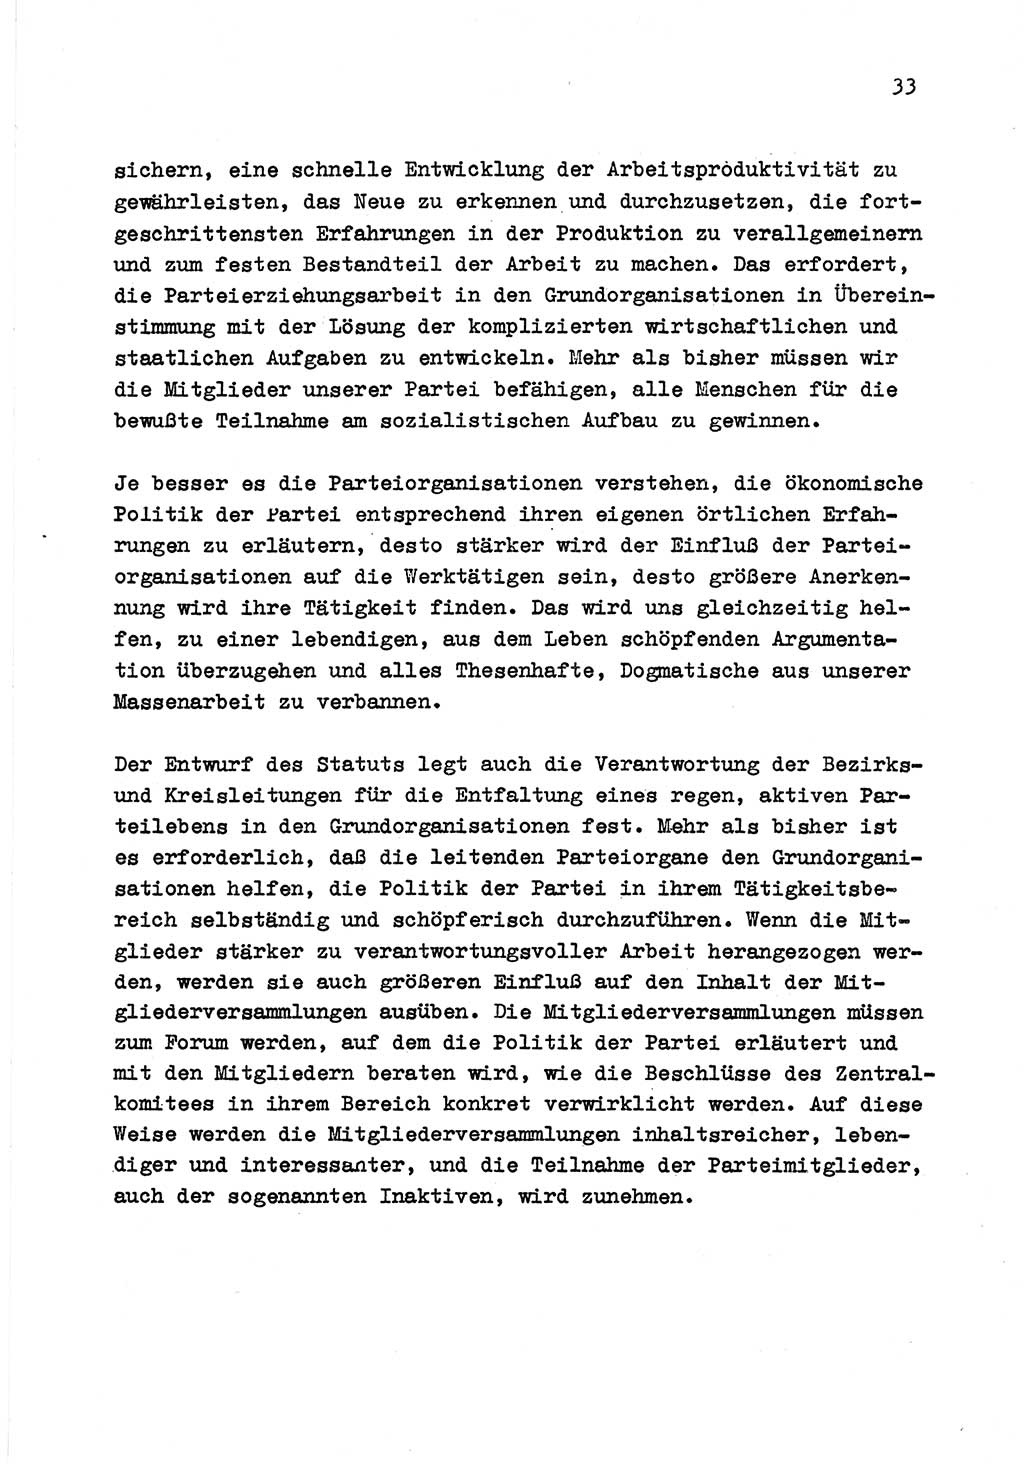 Zu Fragen der Parteiarbeit [Sozialistische Einheitspartei Deutschlands (SED) Deutsche Demokratische Republik (DDR)] 1979, Seite 33 (Fr. PA SED DDR 1979, S. 33)